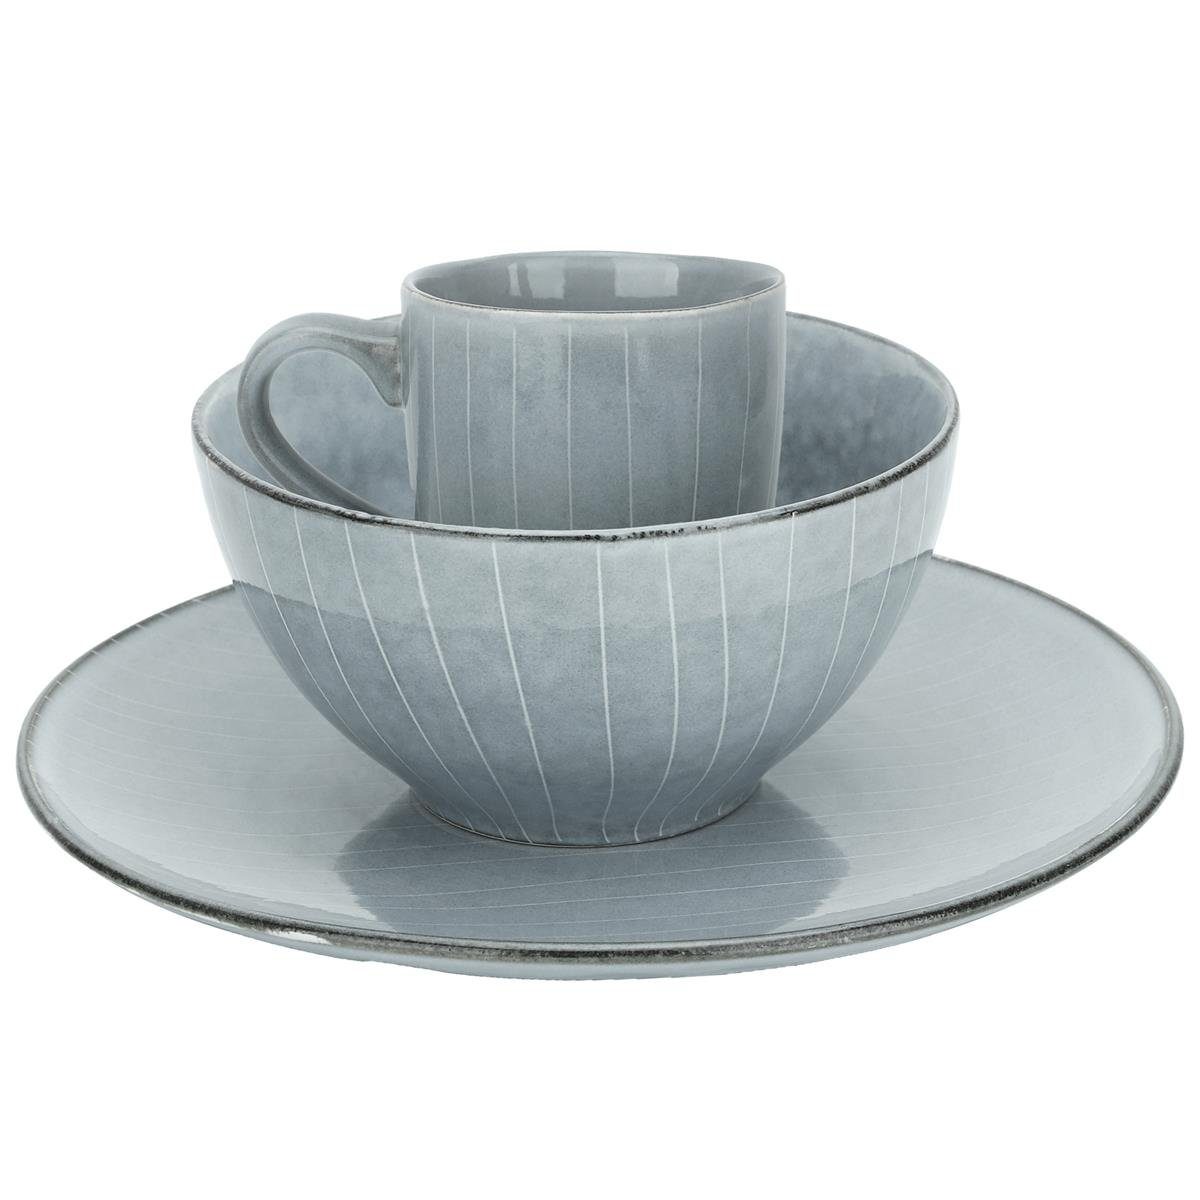 Intirilife Geschirr-Set (12-tlg), Keramik, hochwertiges 12-teiliges  Geschirrset in Grau für Frühstück Mittag- und Abendessen - Dinnerset  Frühstücksgeschirr